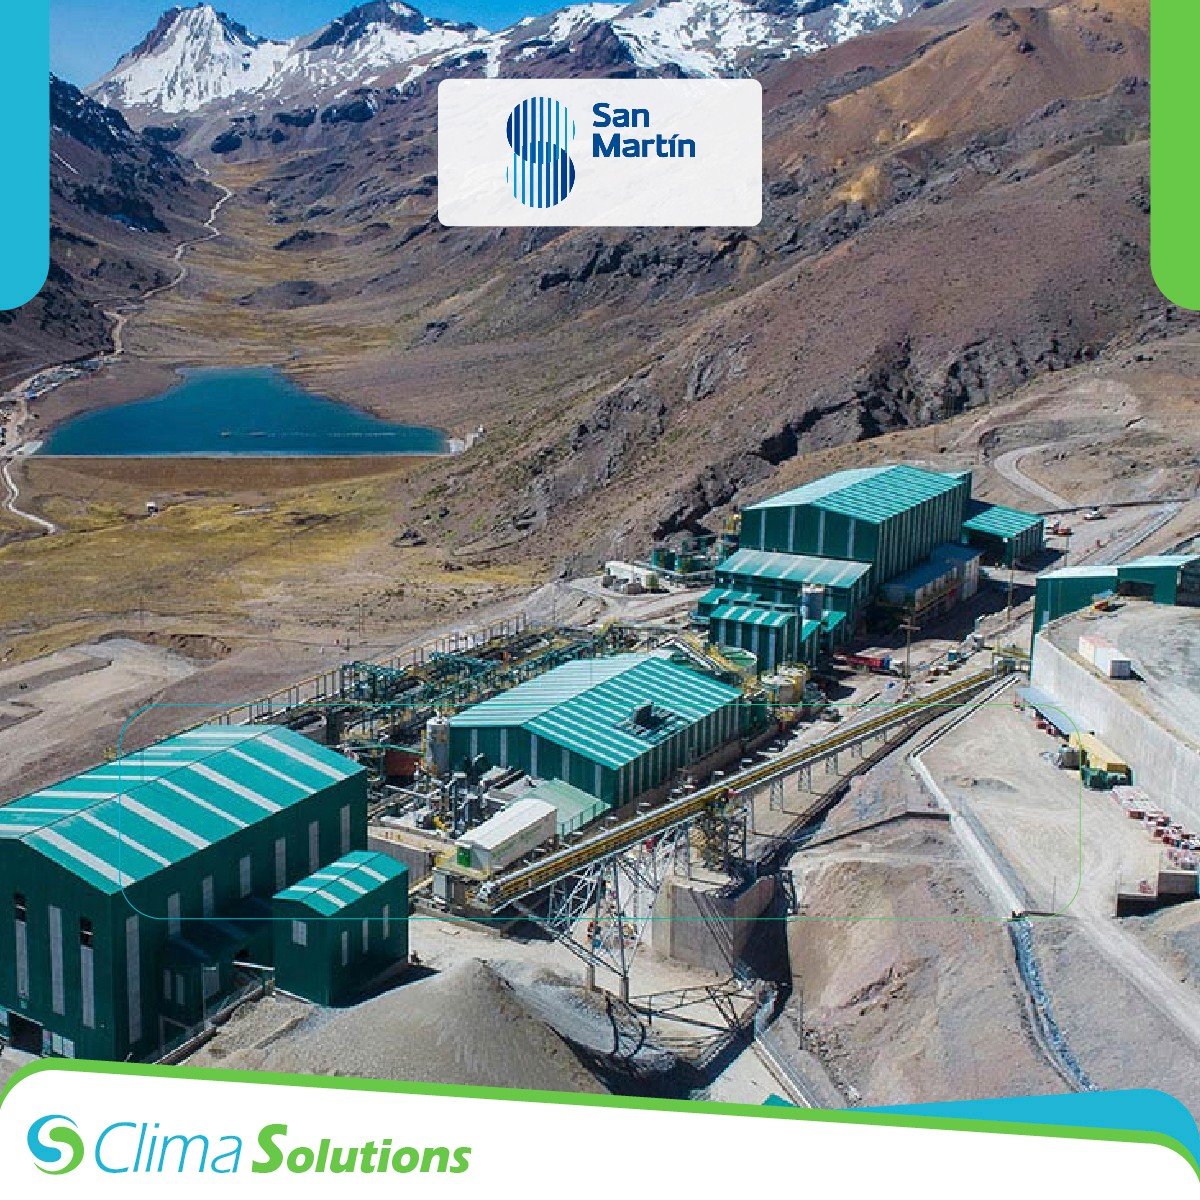 Mantenimiento Correctivo de Equipos de Aire Acondicionado Empresa San Martín - Clima Solutions Peru